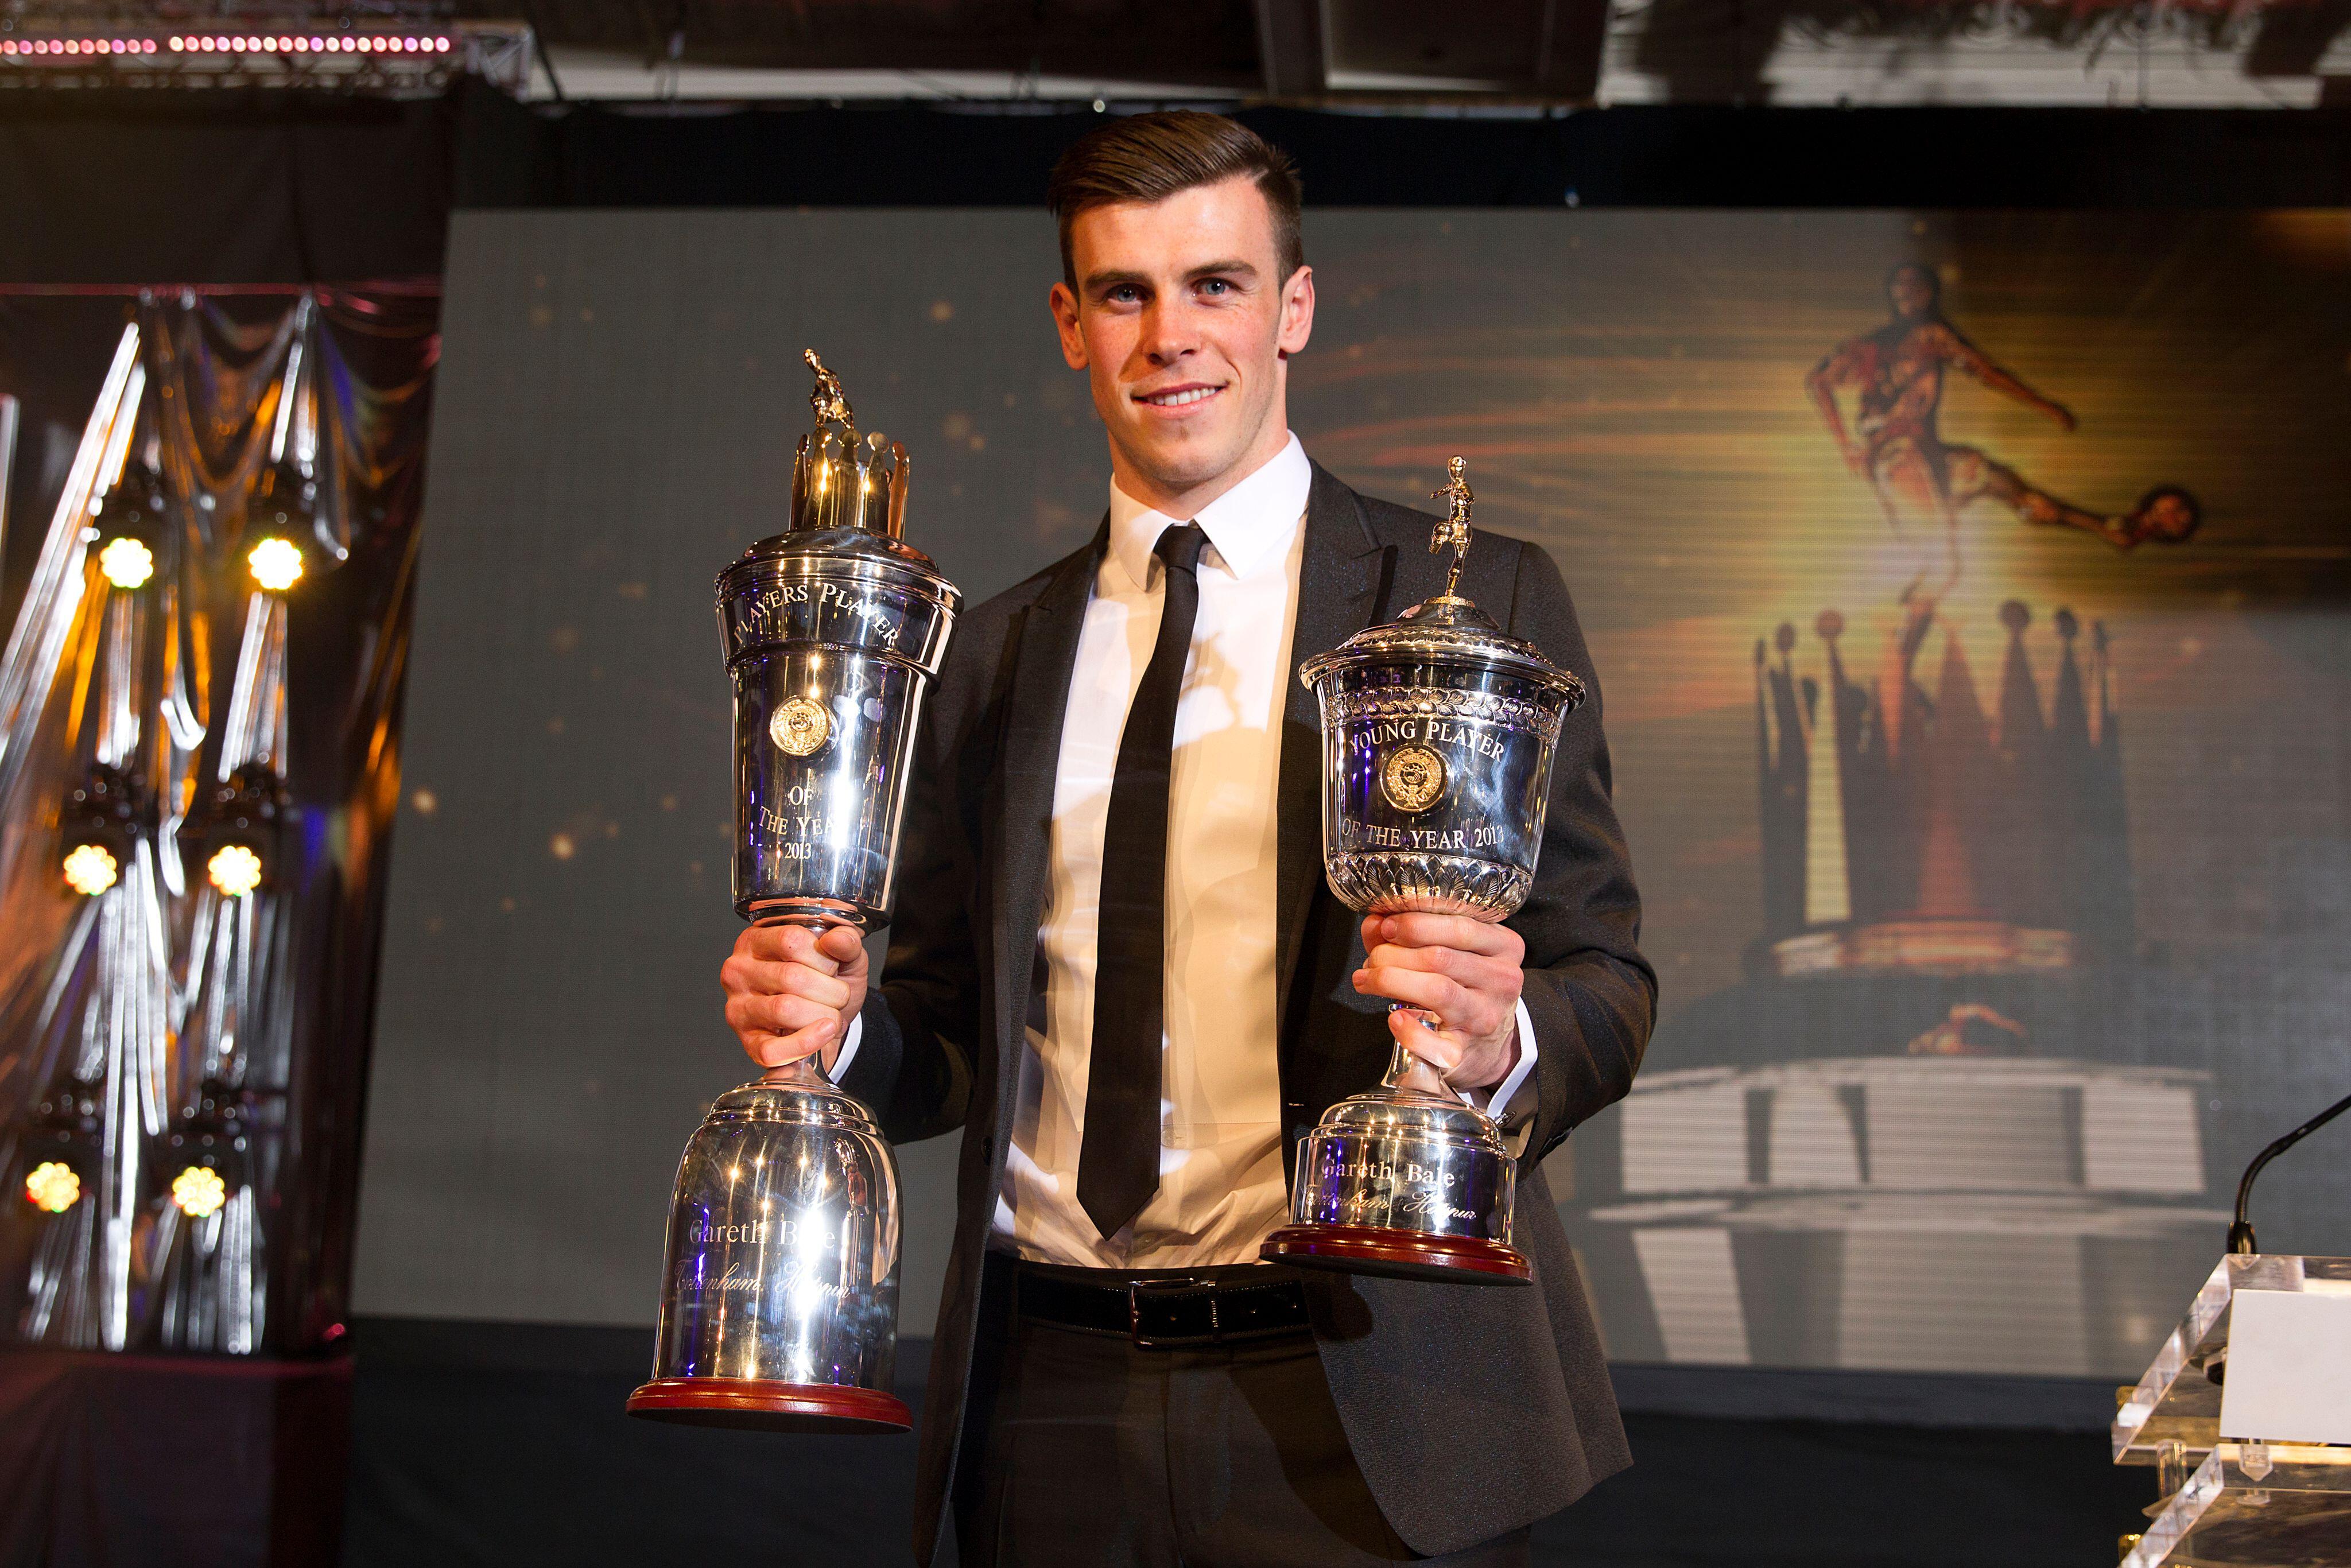 Remembering Gareth Bale's incredible 2012/13 season